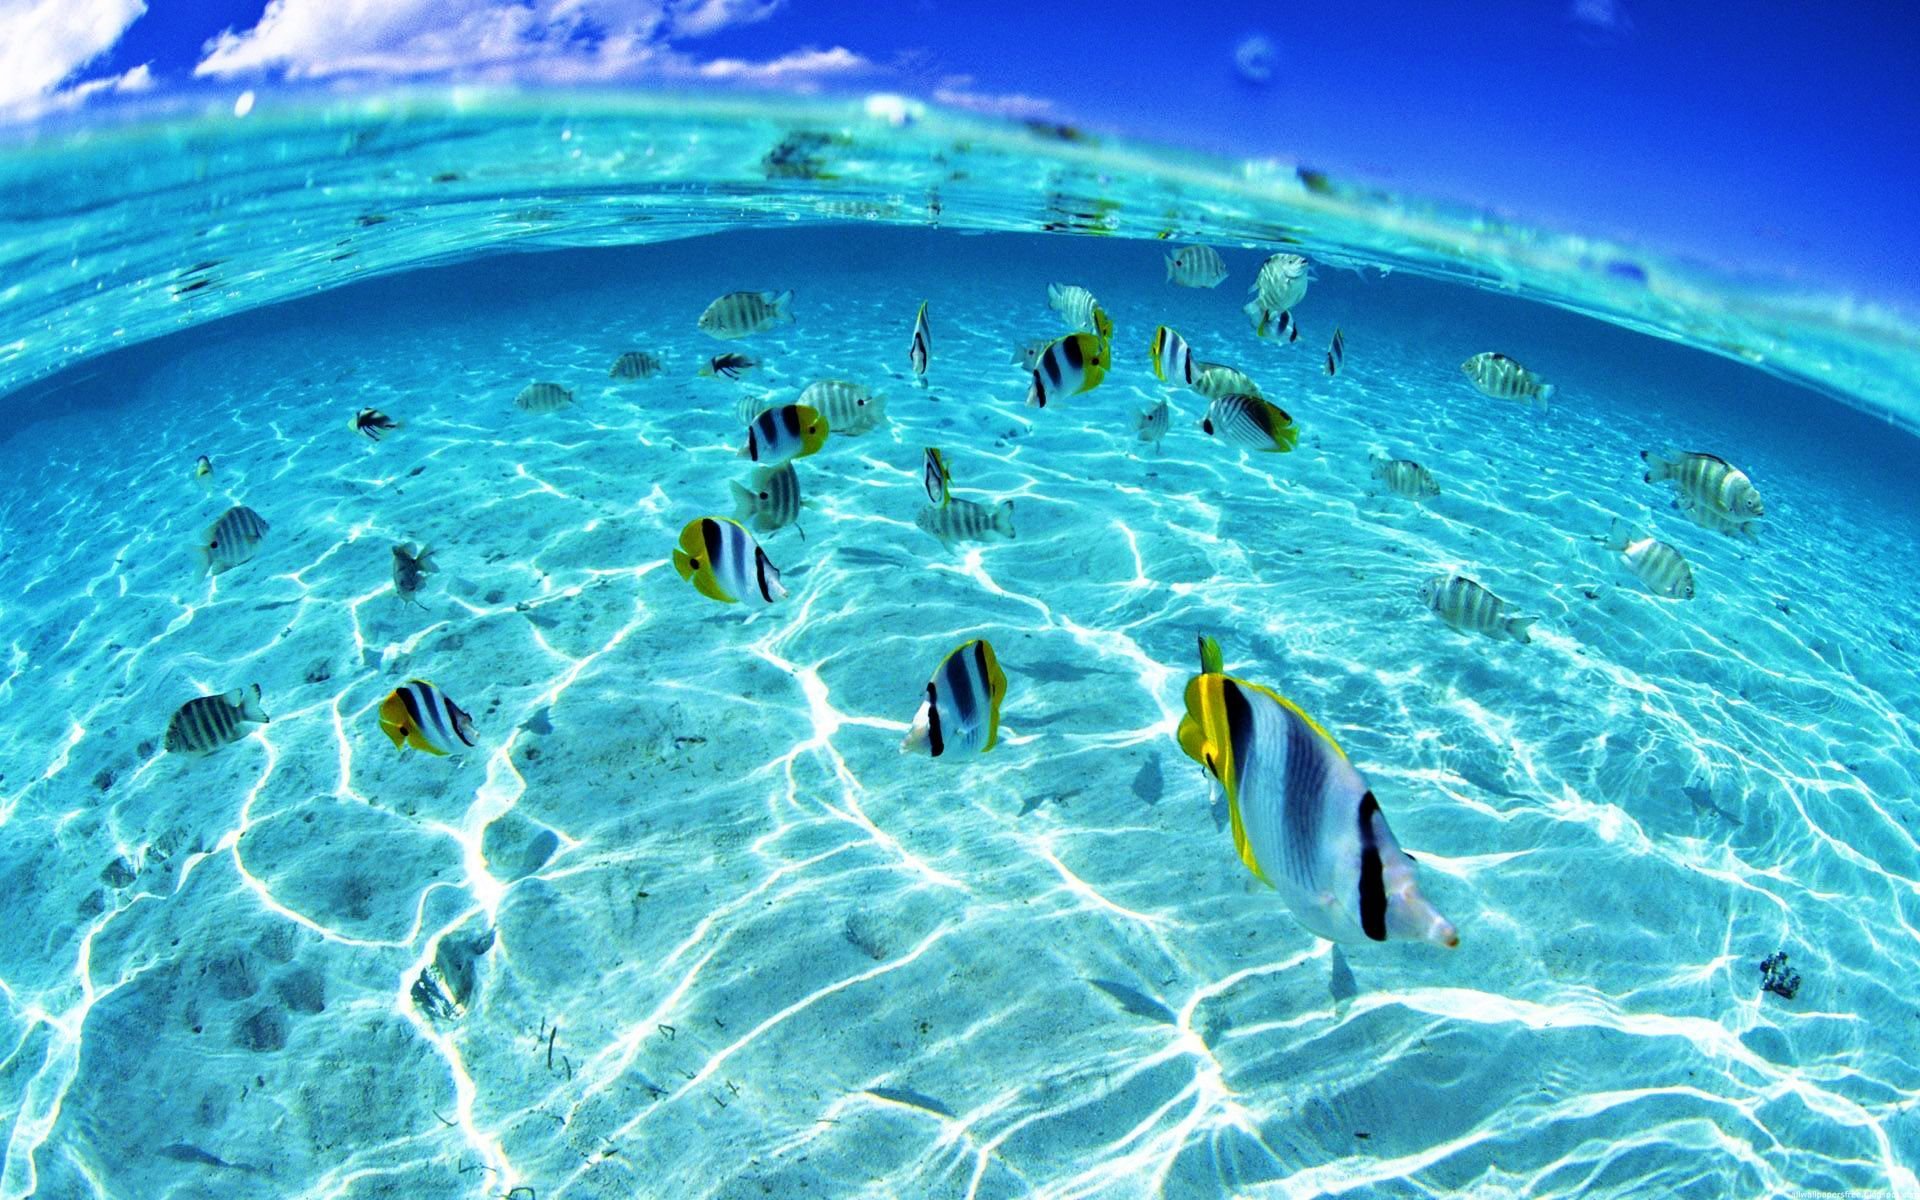 Âm thanh đại dương thay đổi ảnh hưởng đến hoạt động sống của nhiều sinh vật biển